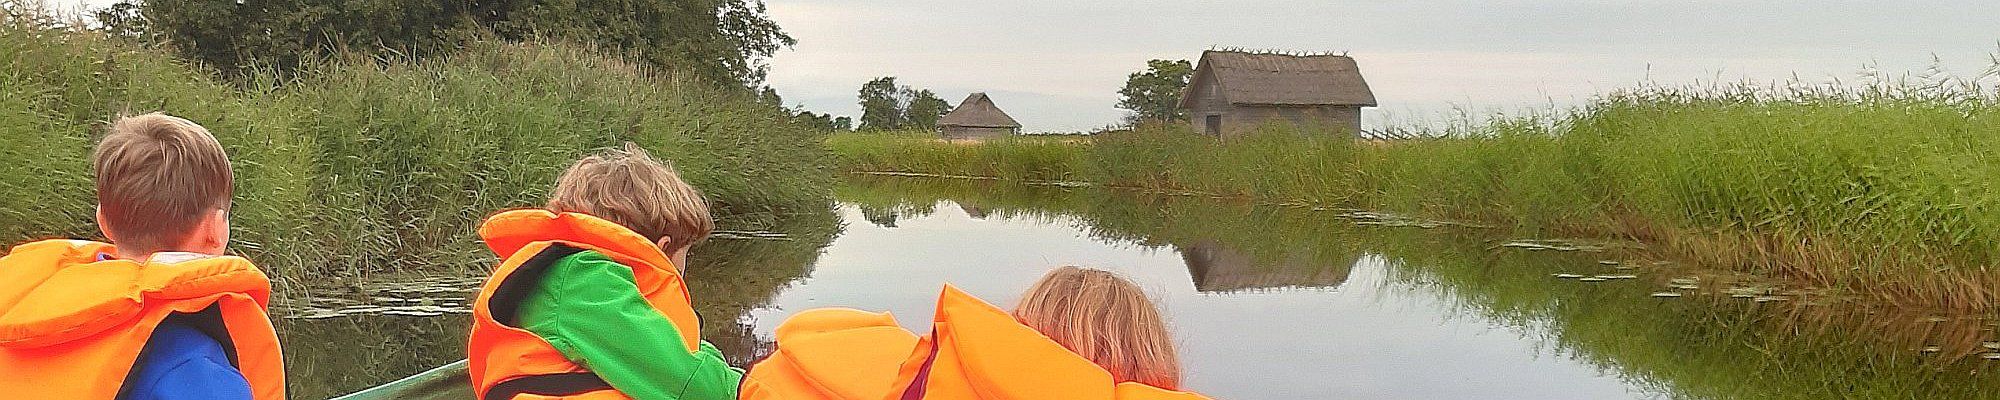 Familienreise nach Estland - Abenteuer und Naturerlebnis